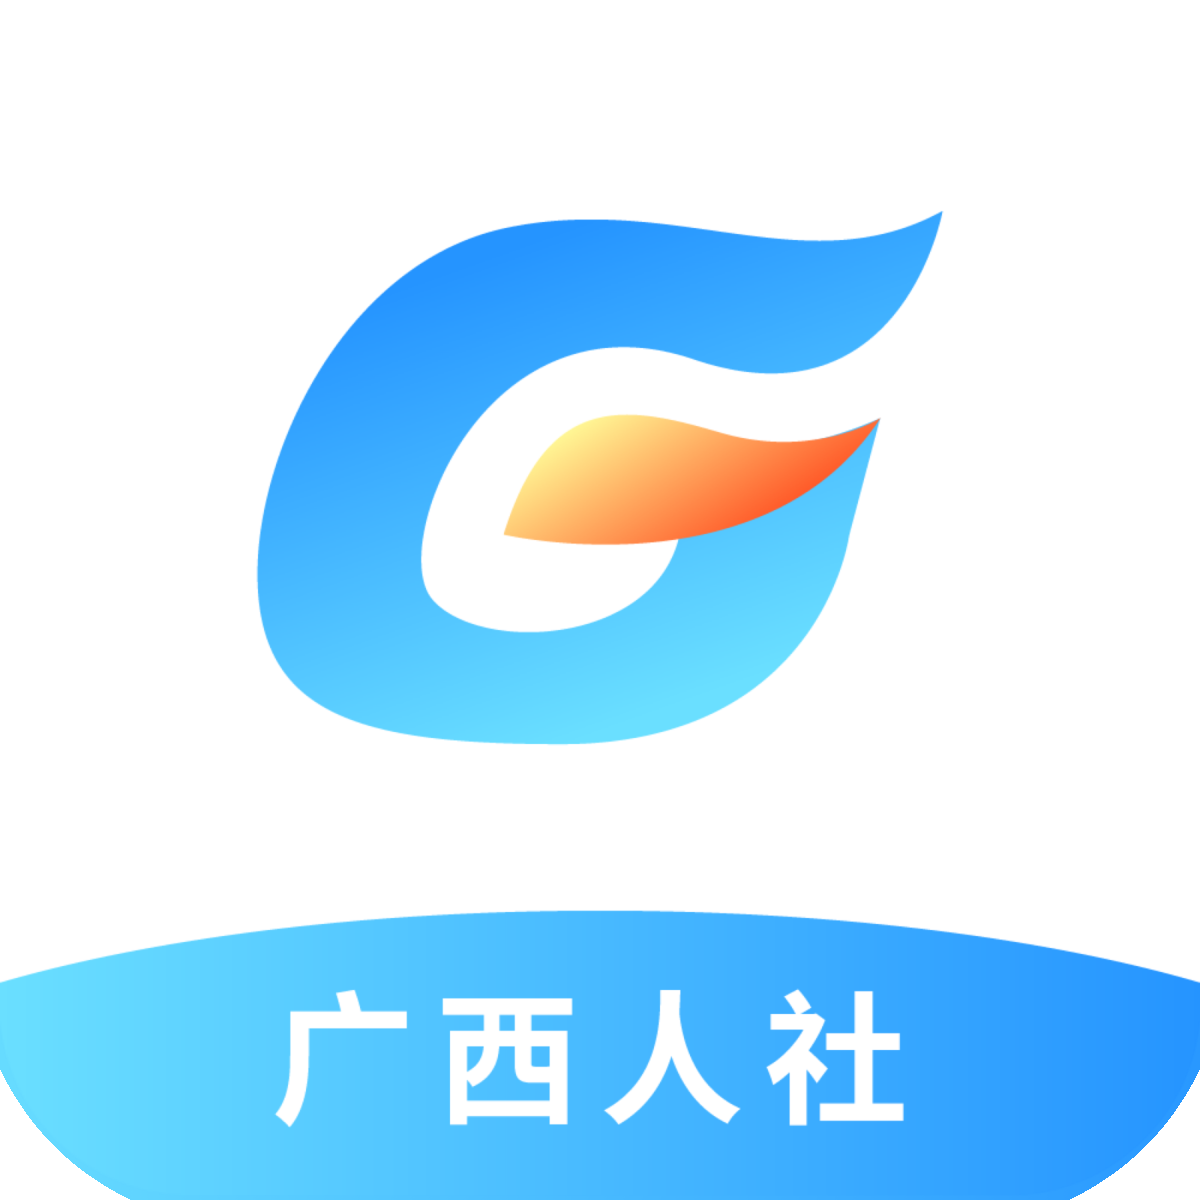 广西人社12333养老认证app